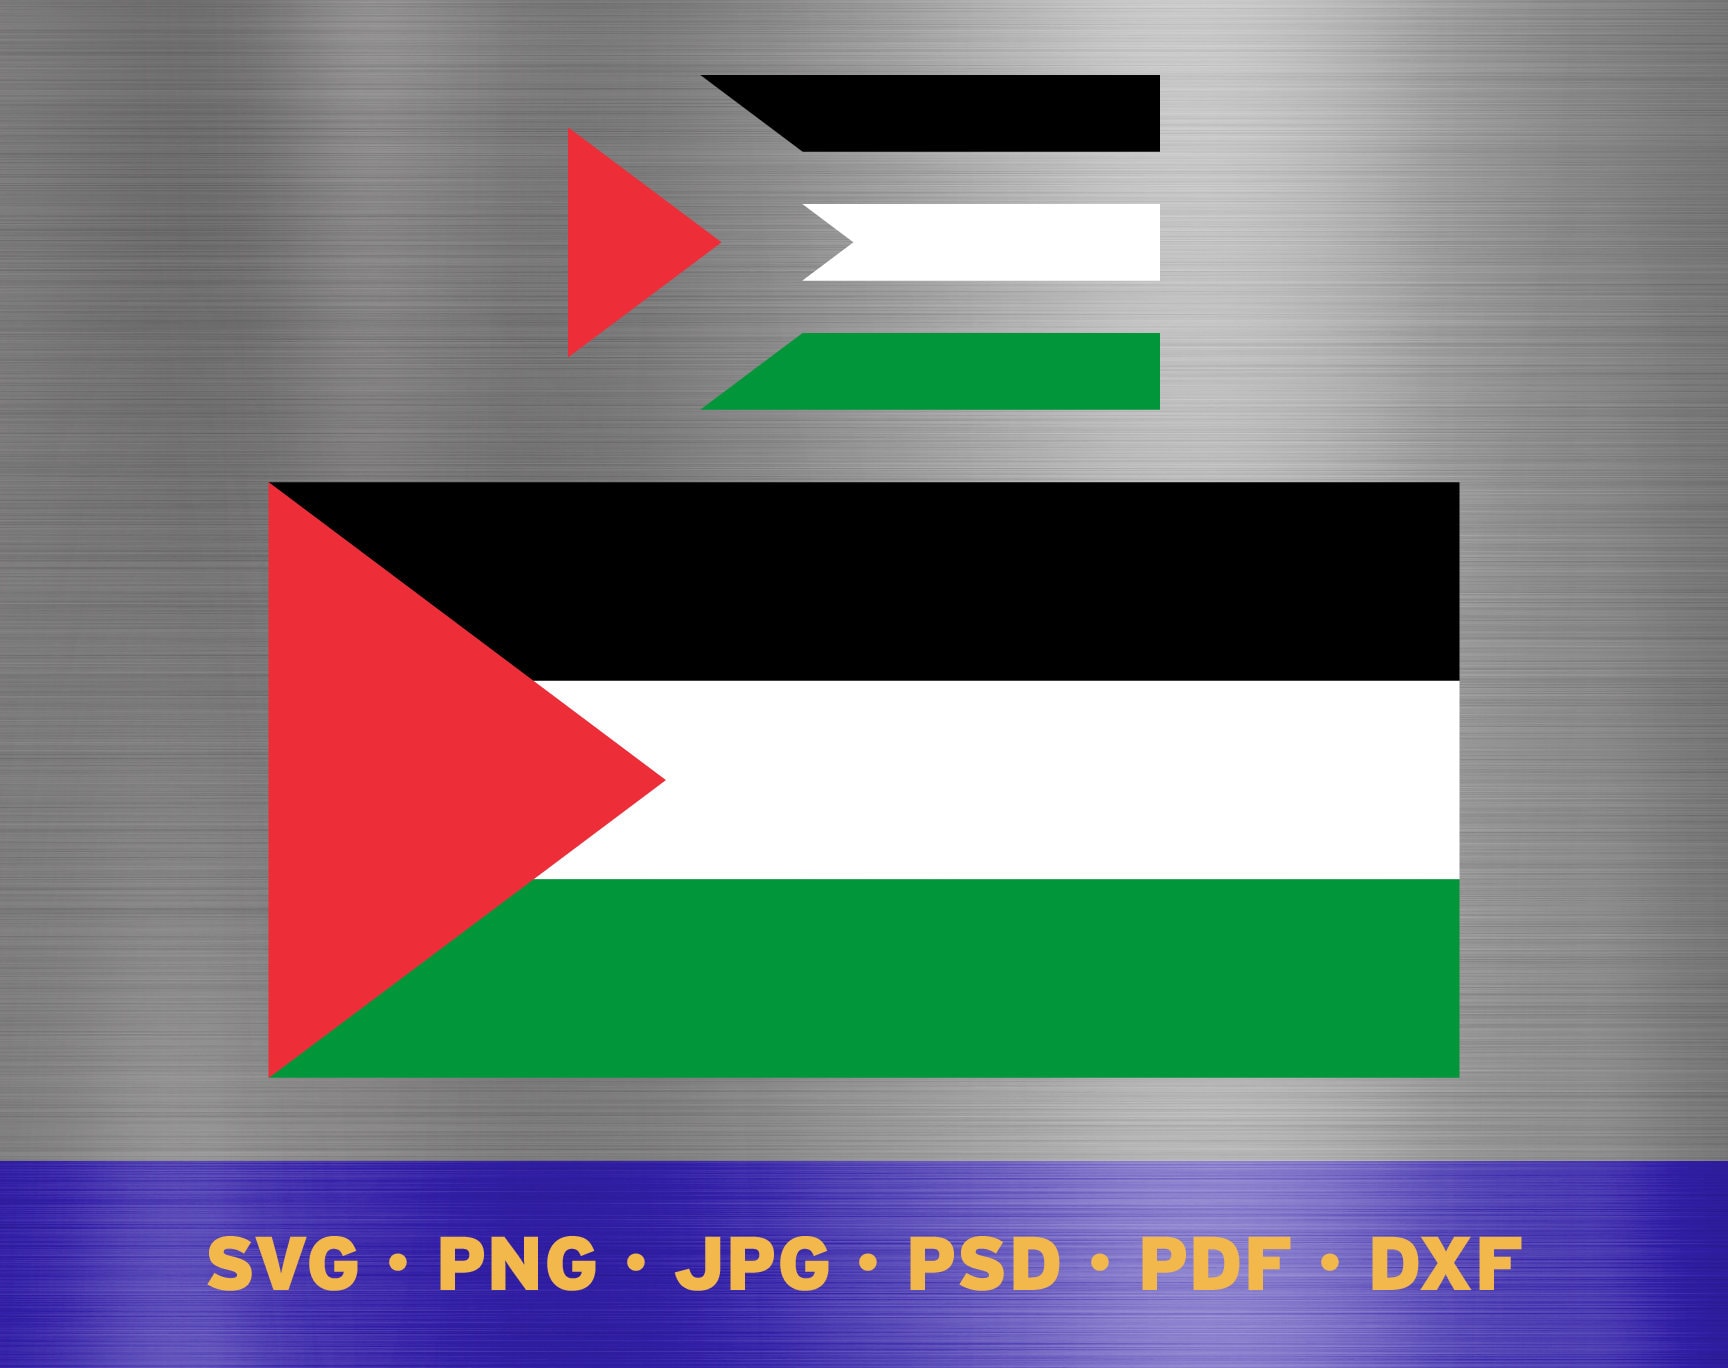 Palestinian Palestine Flag 90 X 150 Cm atleast 3 Weeks to Arrive